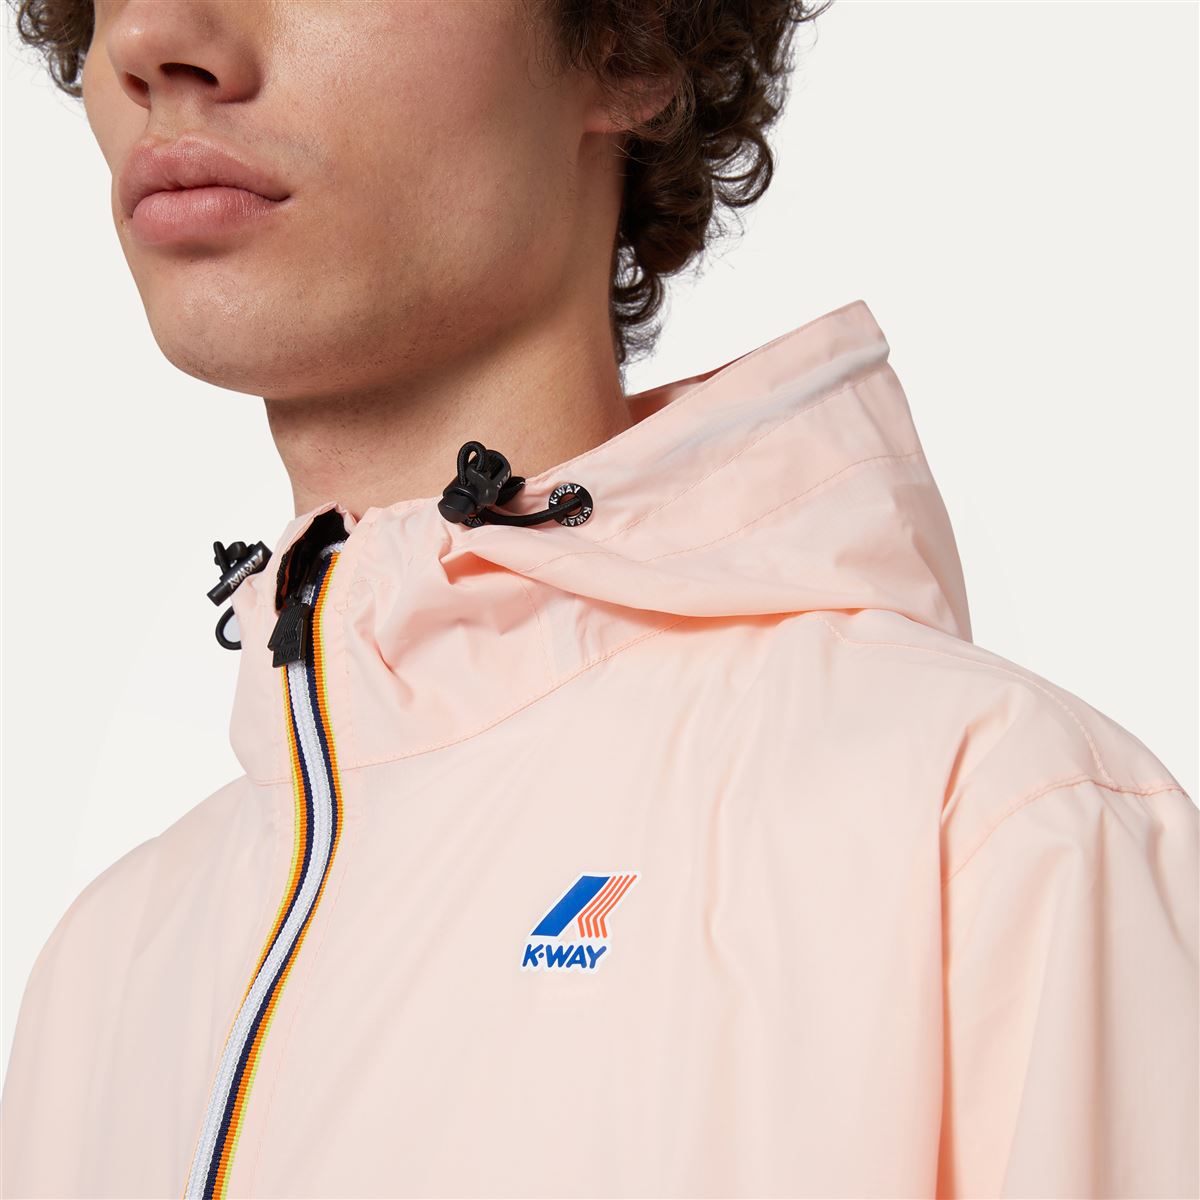 Claude - Unisex Packable Full Zip Waterproof  Rain Jacket in Pink Dafne